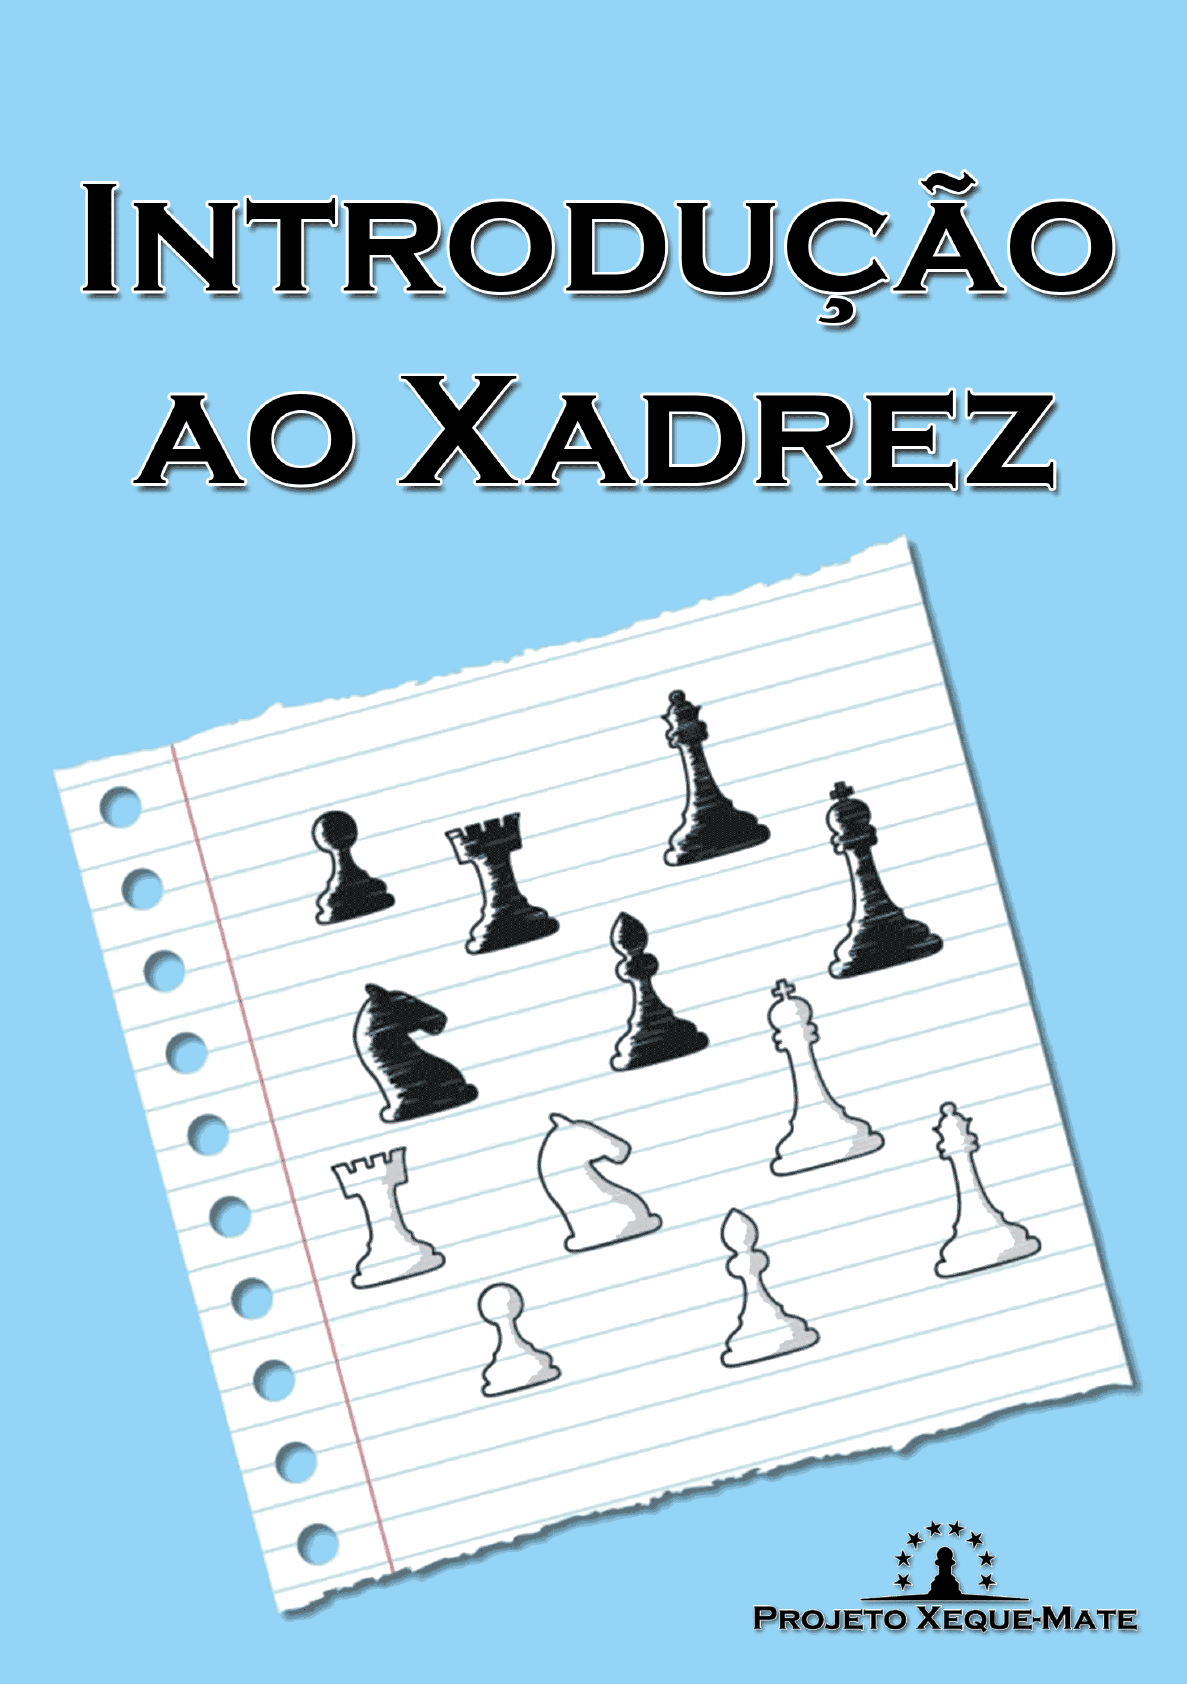 Meu Primeiro Livro de Xadrez: curso para escolares - Wilson da Silva